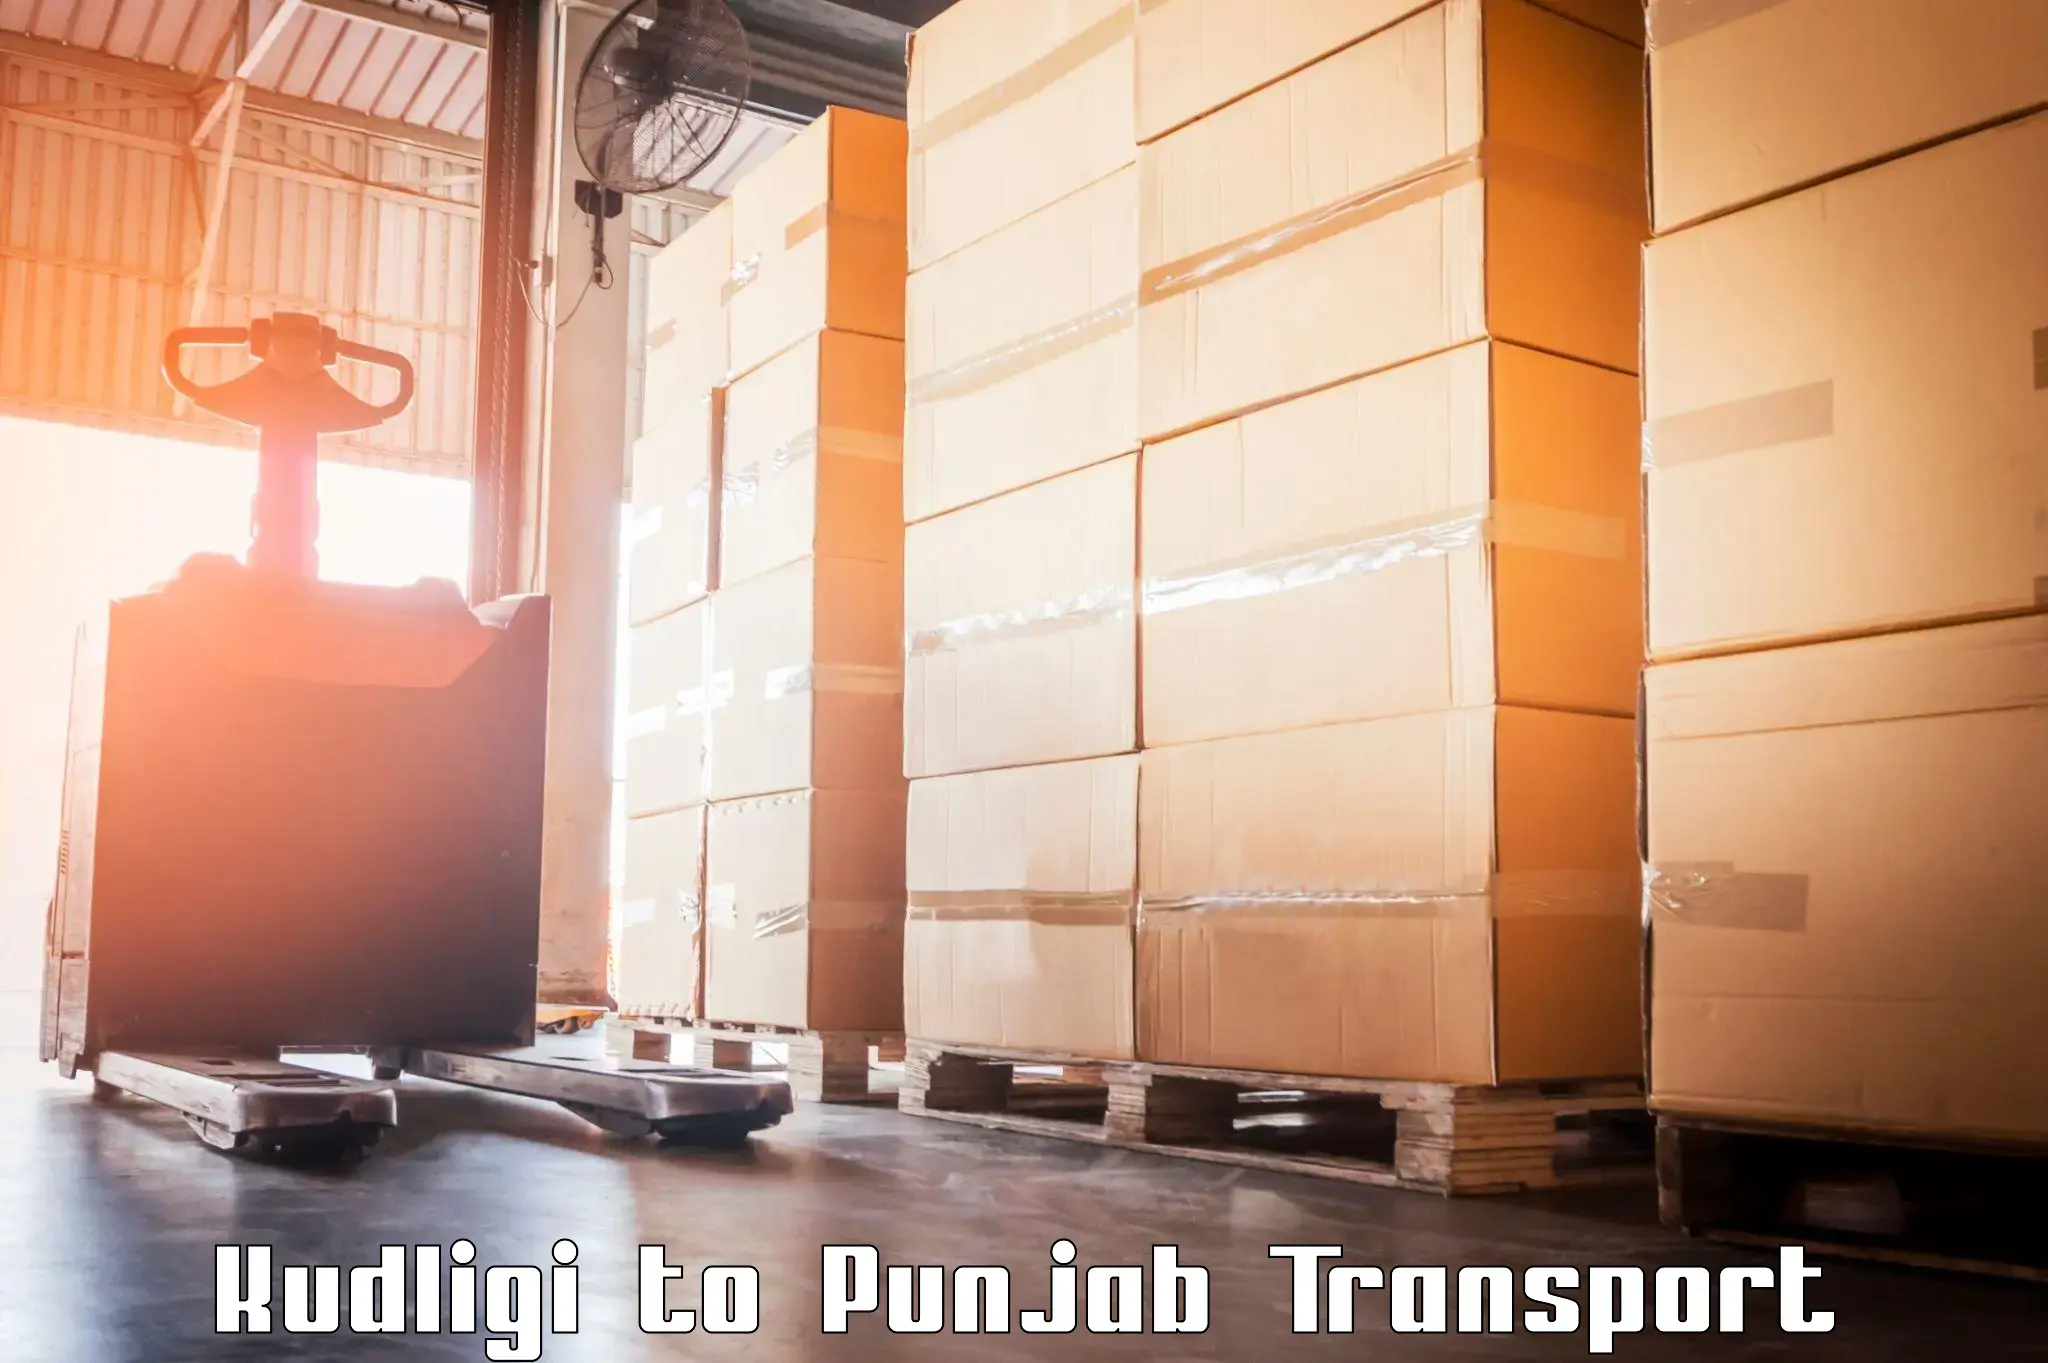 Cargo transport services Kudligi to Sirhind Fatehgarh